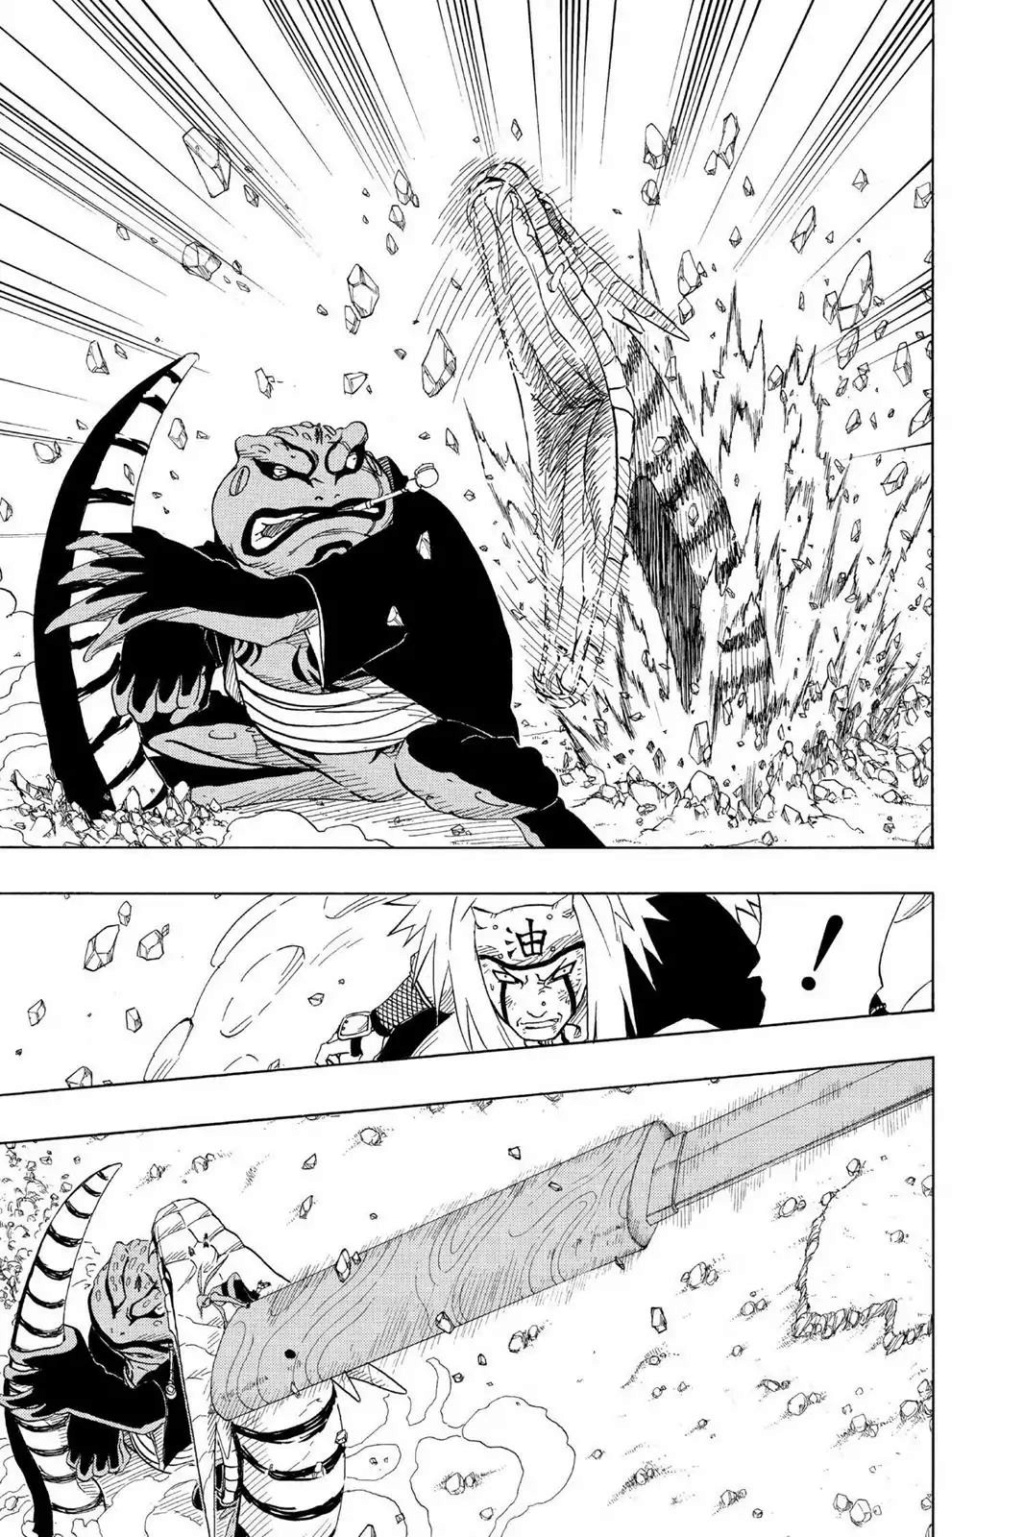 Naruto sem kurama vs tsunade  - Página 4 17_33710